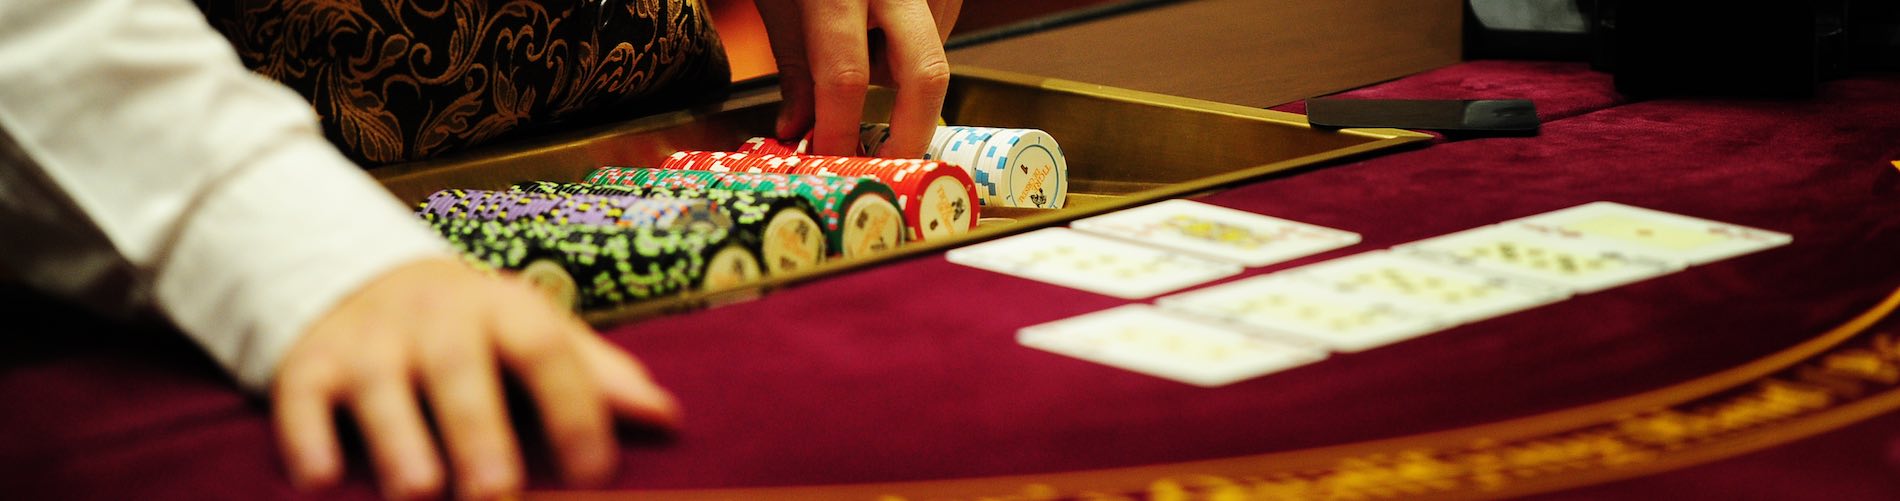 Live Dealer Casino Canada